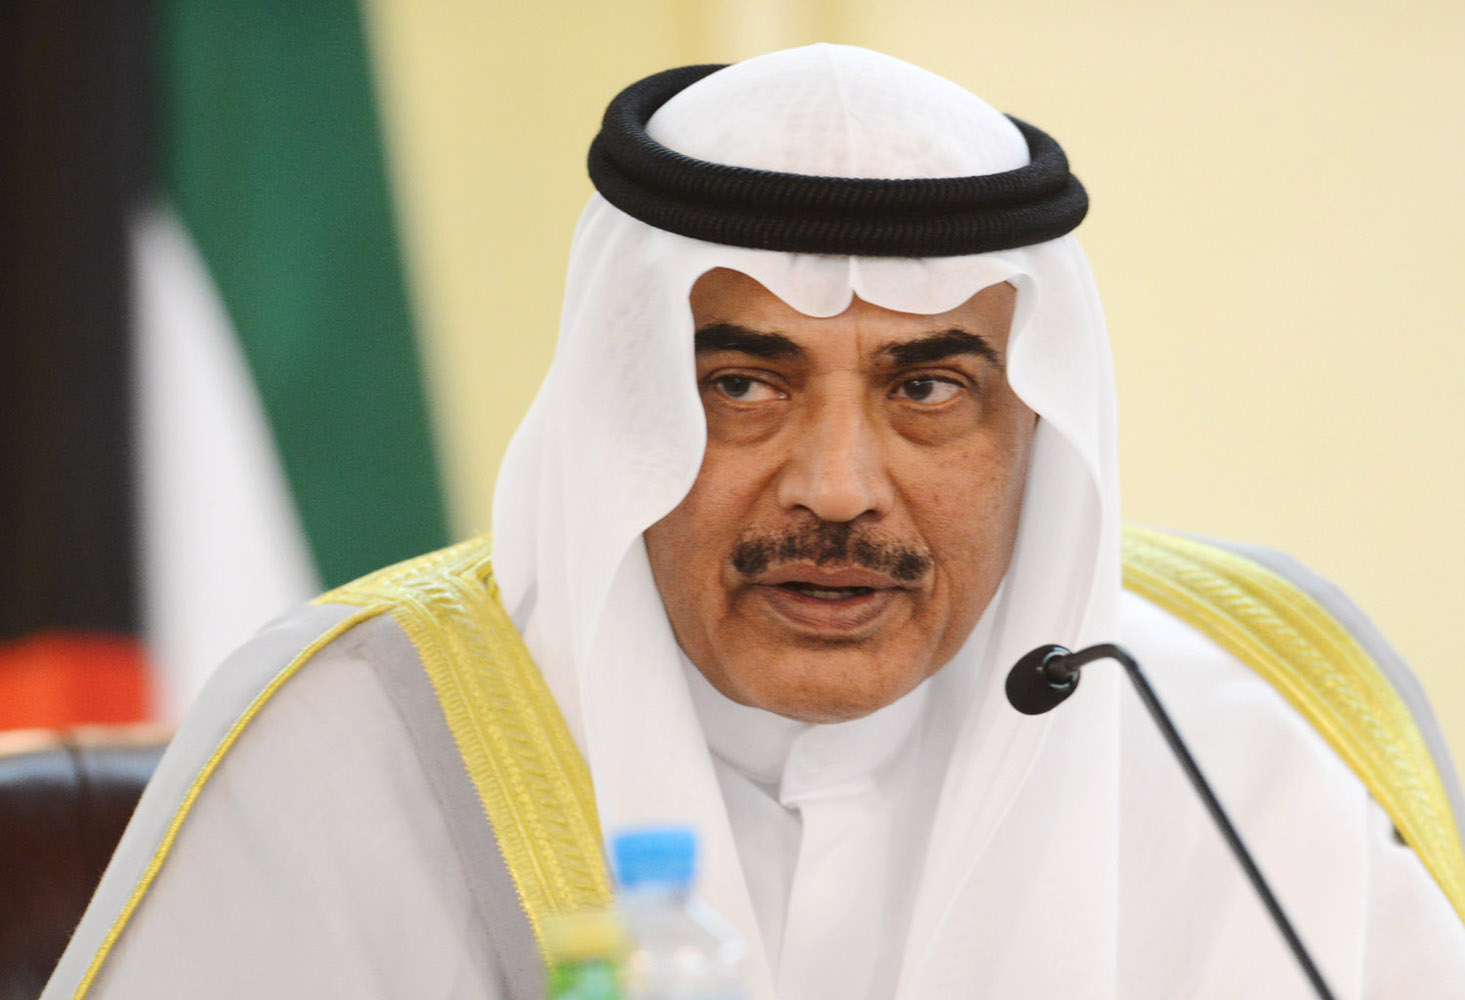   الكويت: قطر مستعدة لتفهم حقيقة هواجس أشقائها الخليجيين